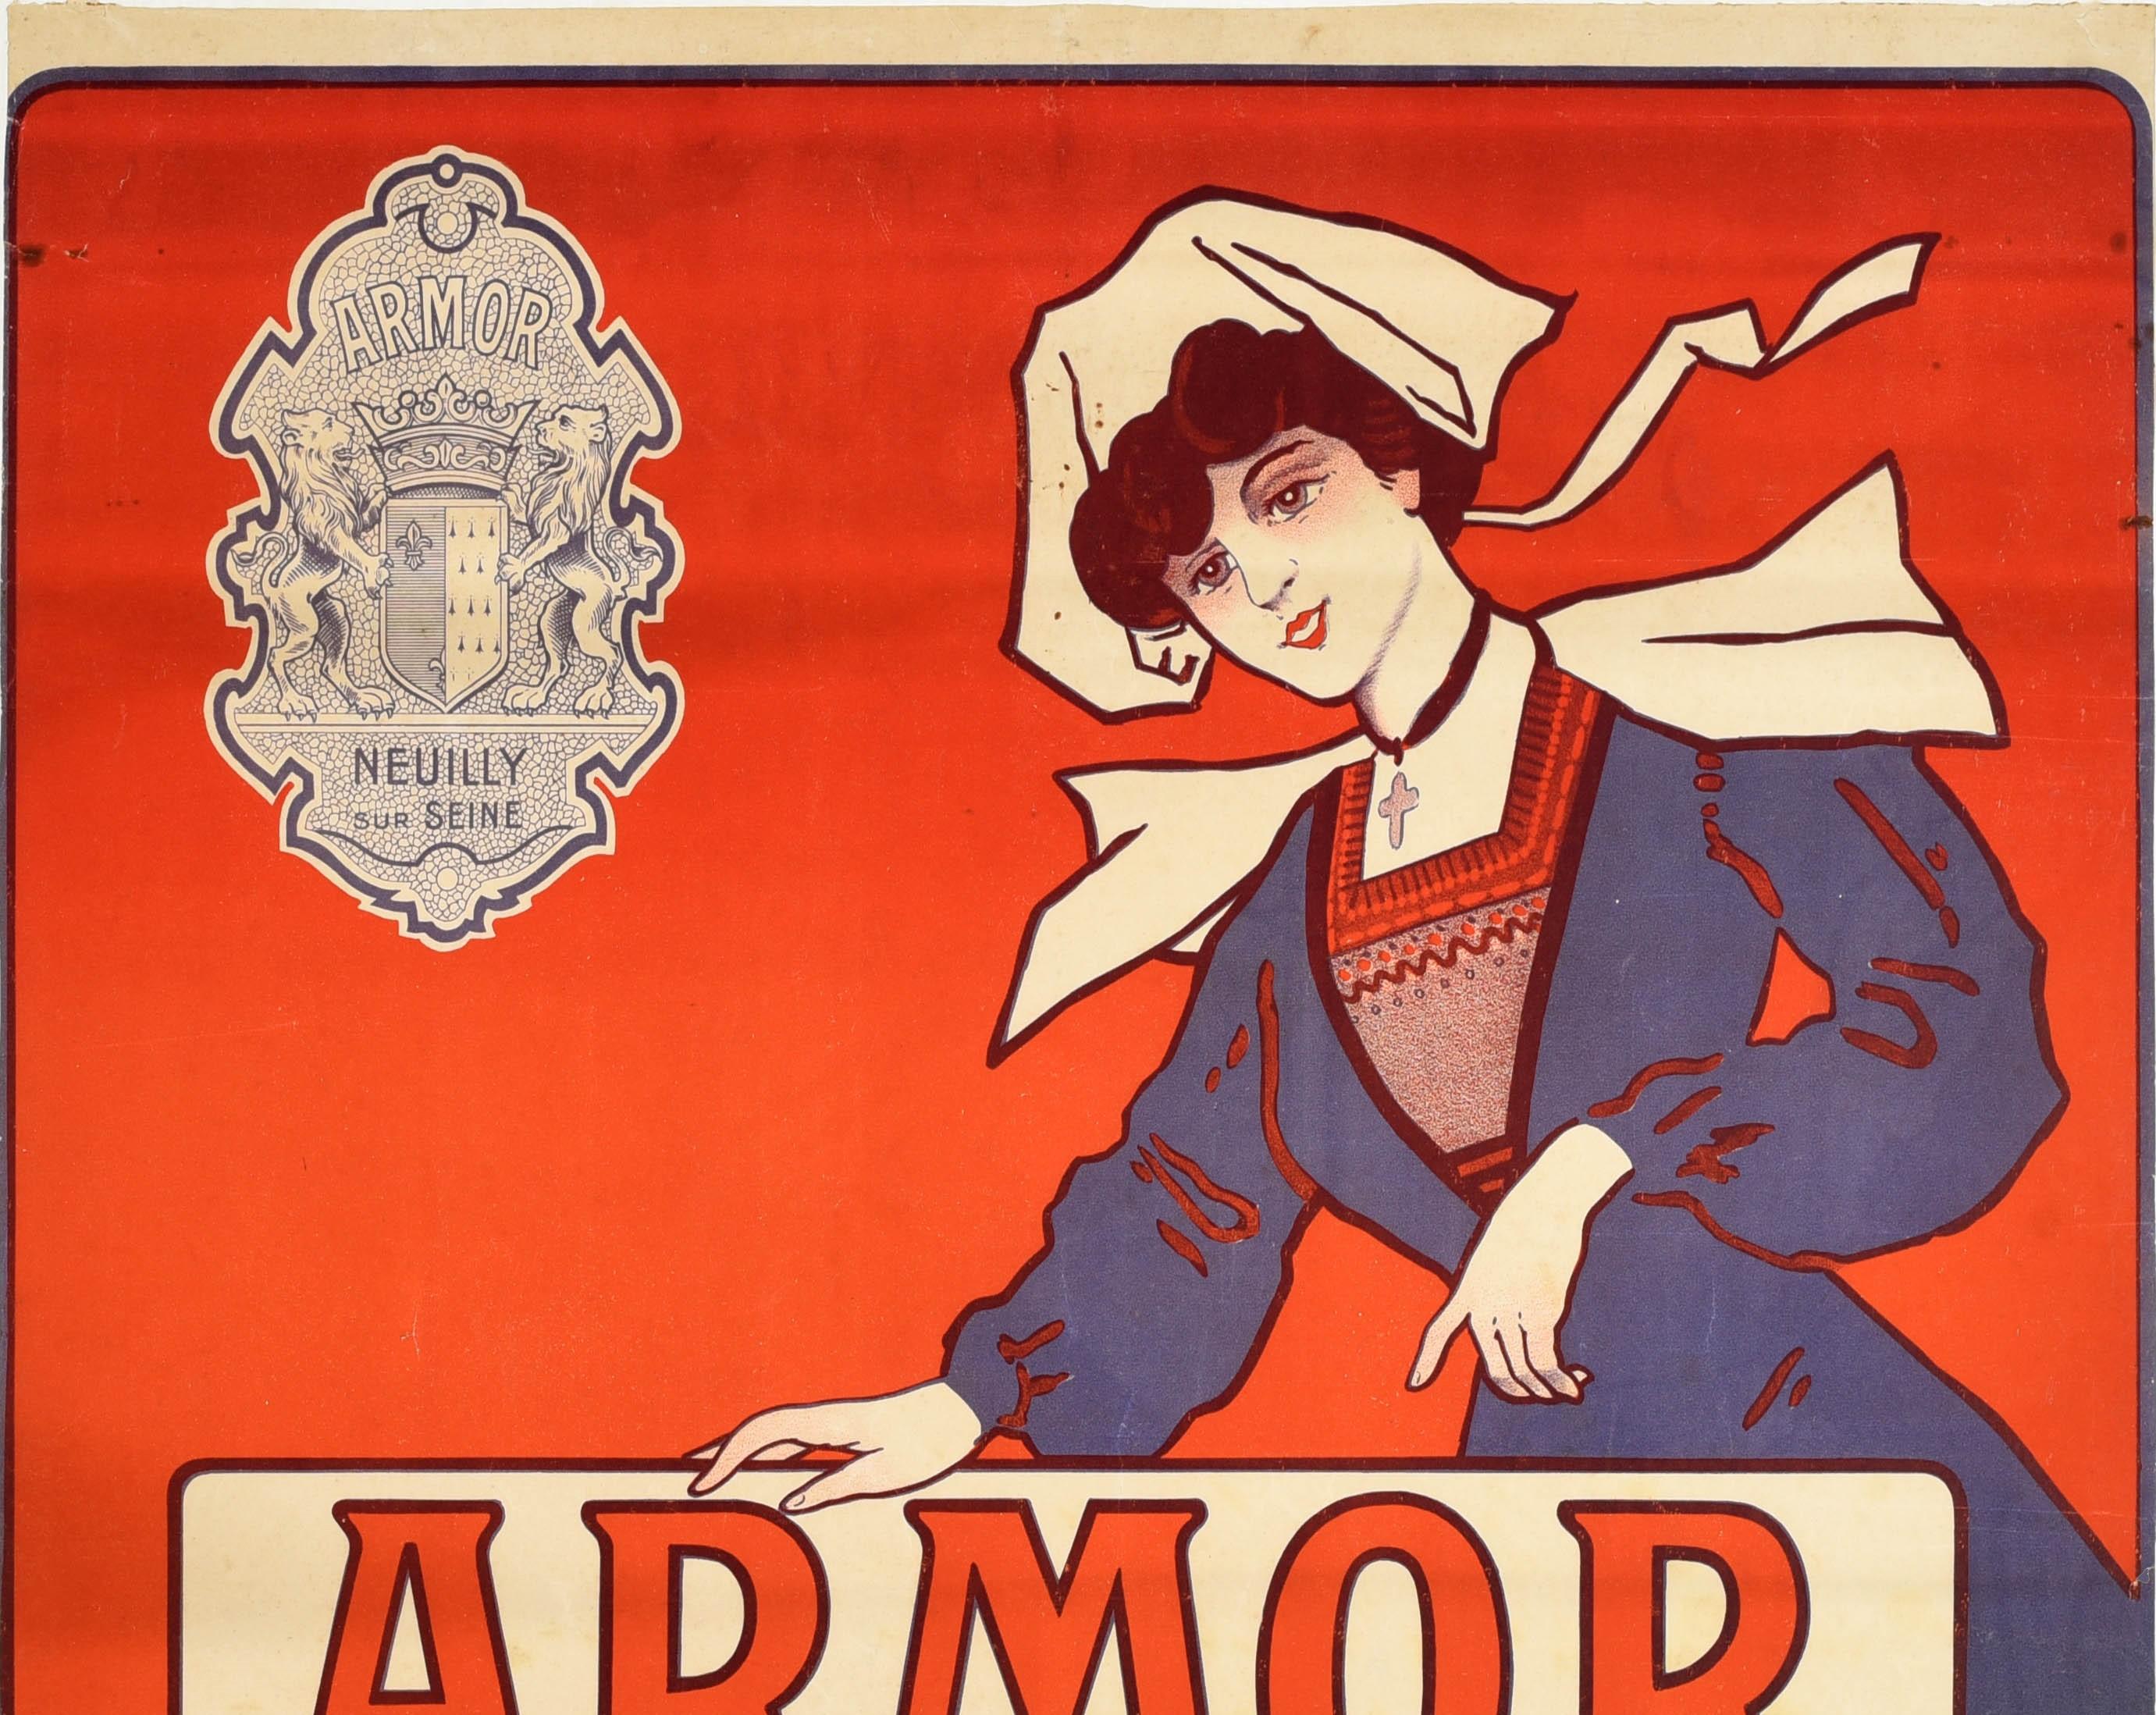 Originales antikes Werbeplakat für Armor Bicycles Neuilly sur Seine mit einem großartigen Design, das eine Dame in modischem Kleid zeigt, die hinter einem Bild eines glänzenden neuen Fahrrads mit dem Wort Armor in stilisierten Buchstaben über den